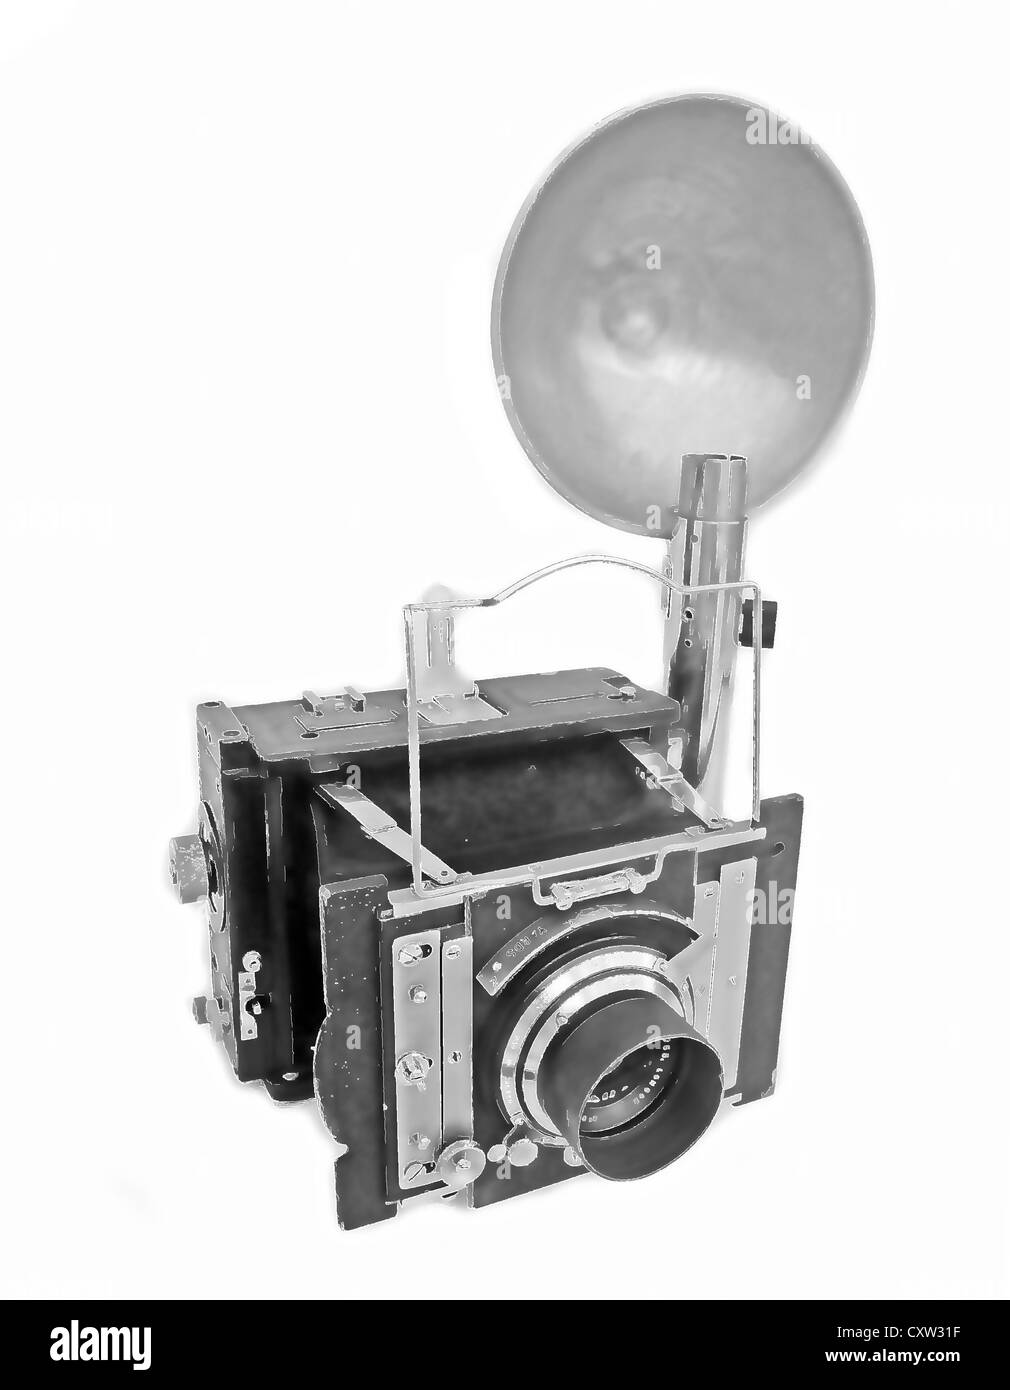 Telecamera anni cinquanta immagini e fotografie stock ad alta risoluzione -  Alamy